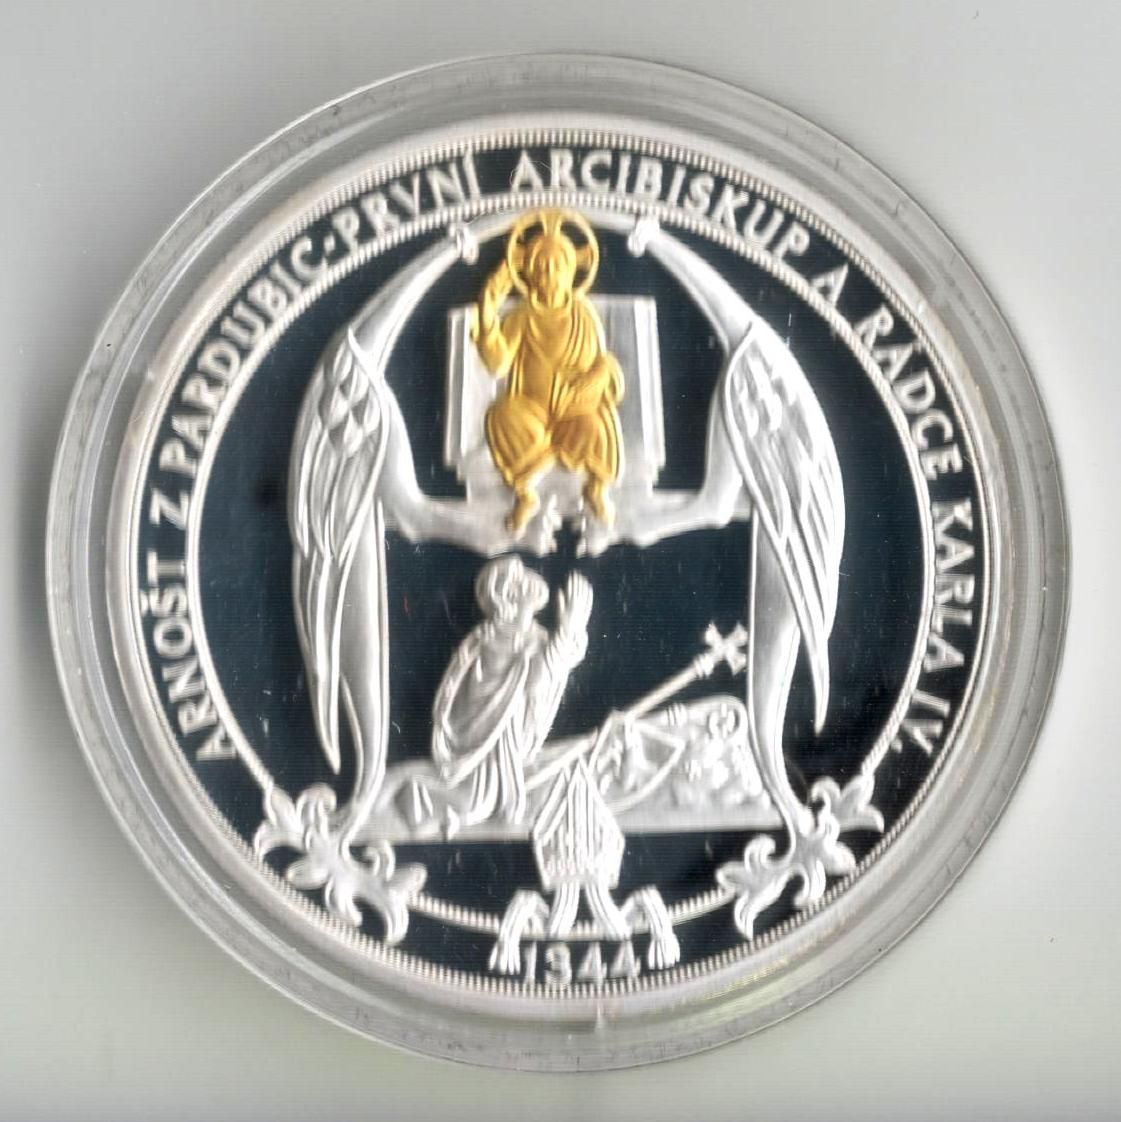 Ag medaile Ag999, korunovace Karla IV.římským králem, ČR